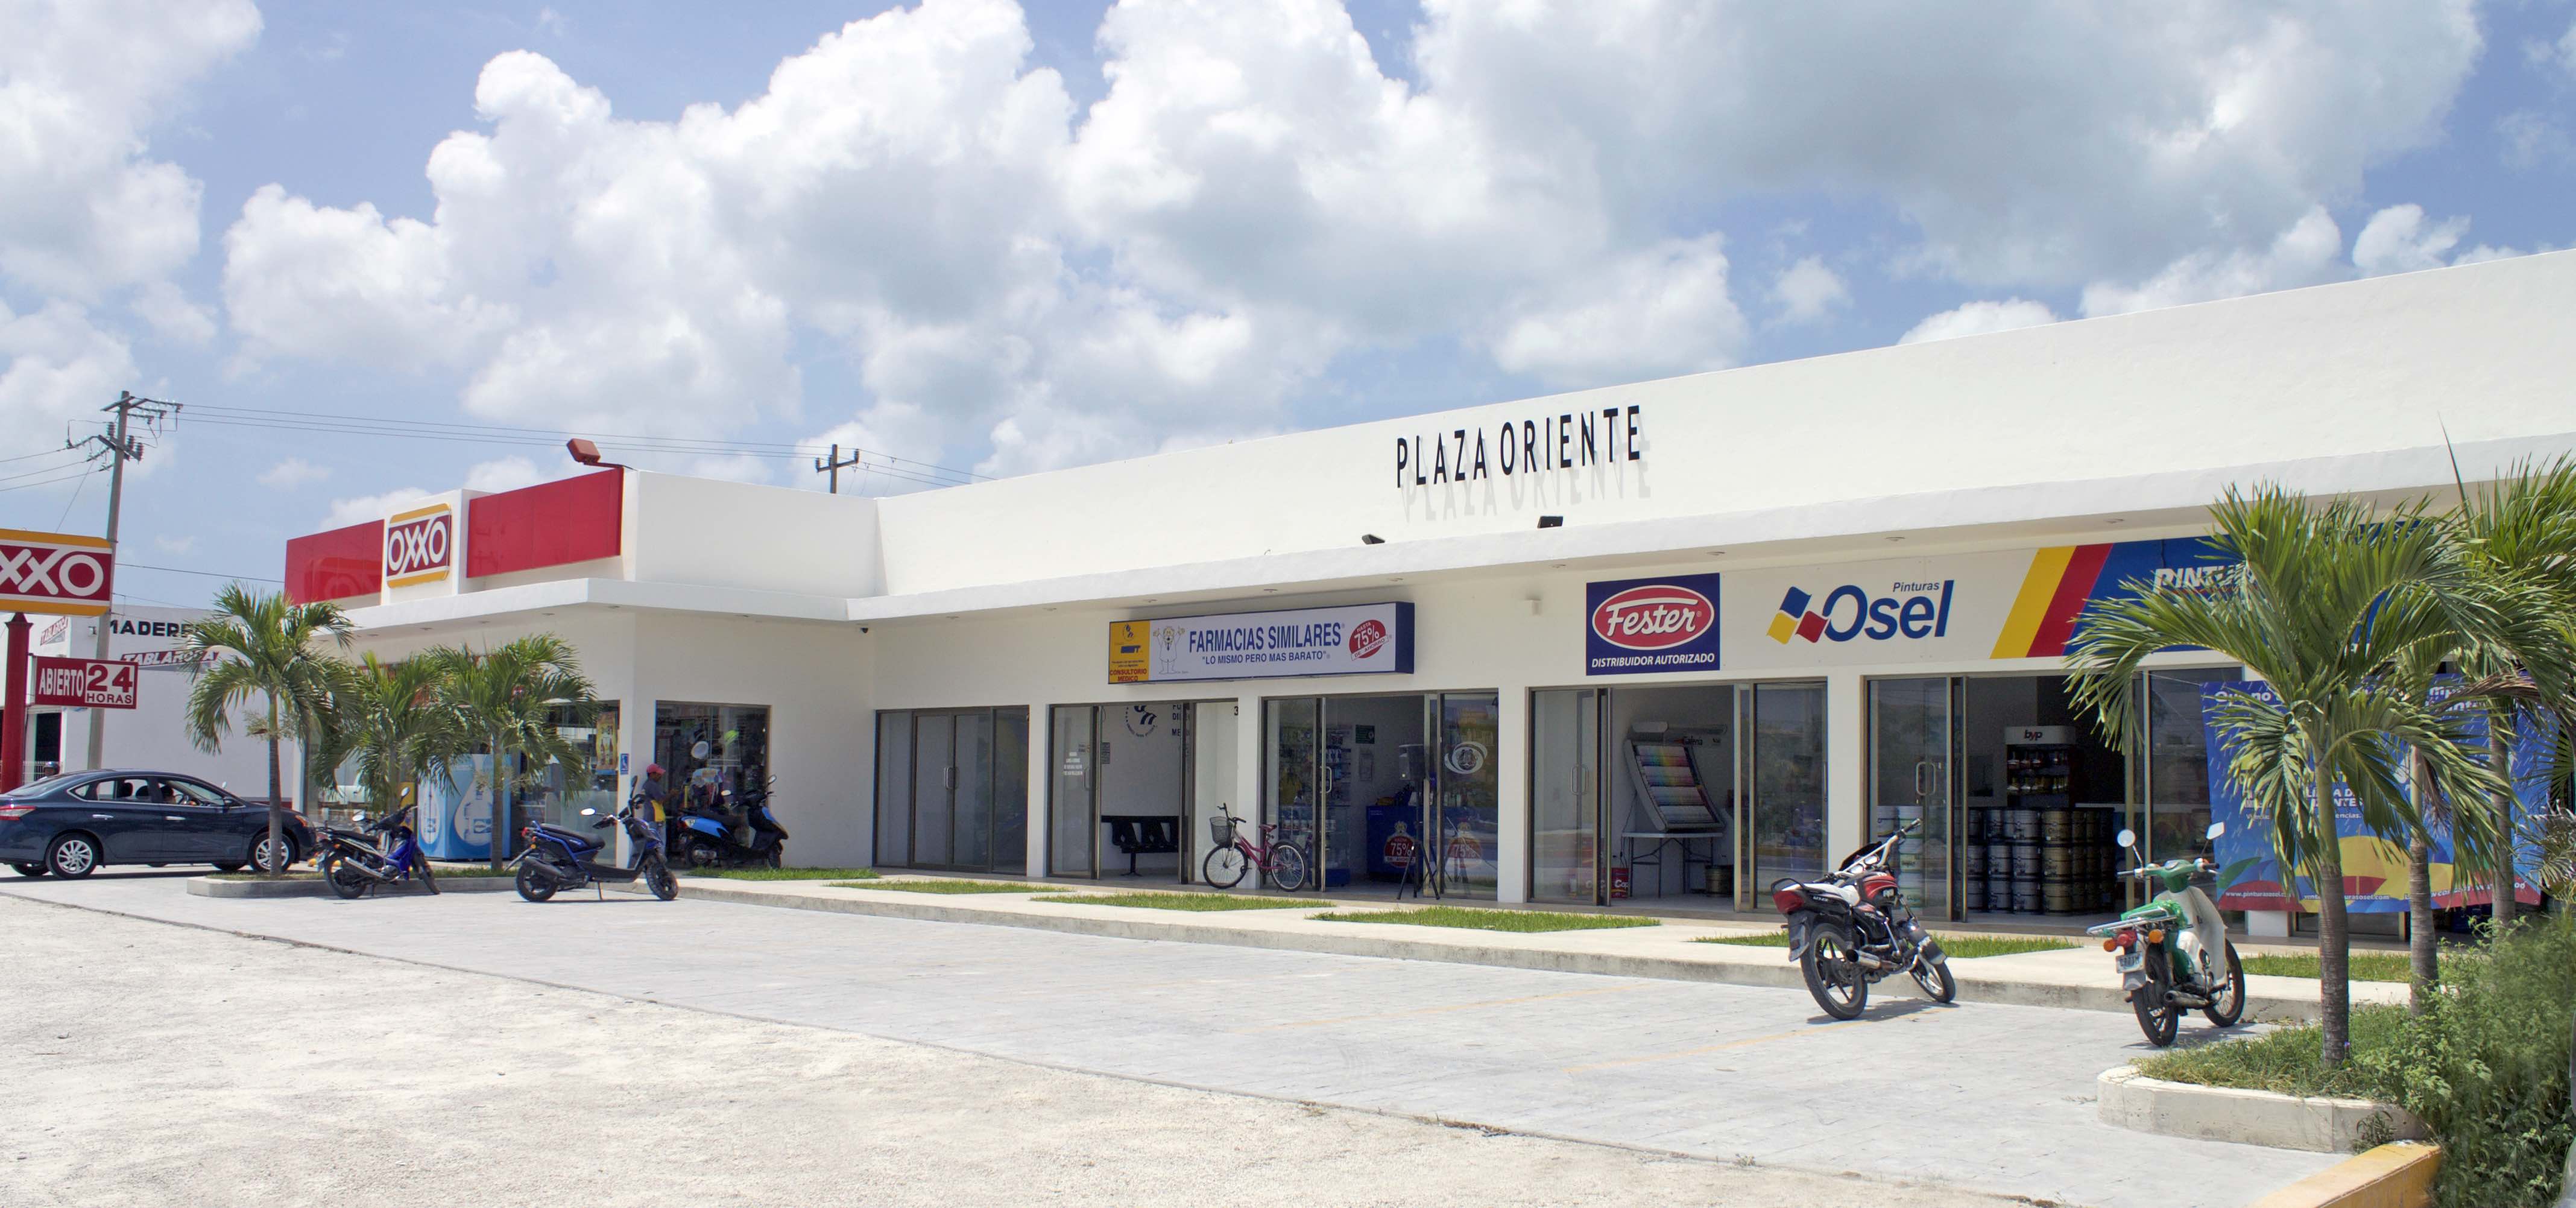 Locales comerciales y bodegas en renta Cozumel - Materiales Dimaco